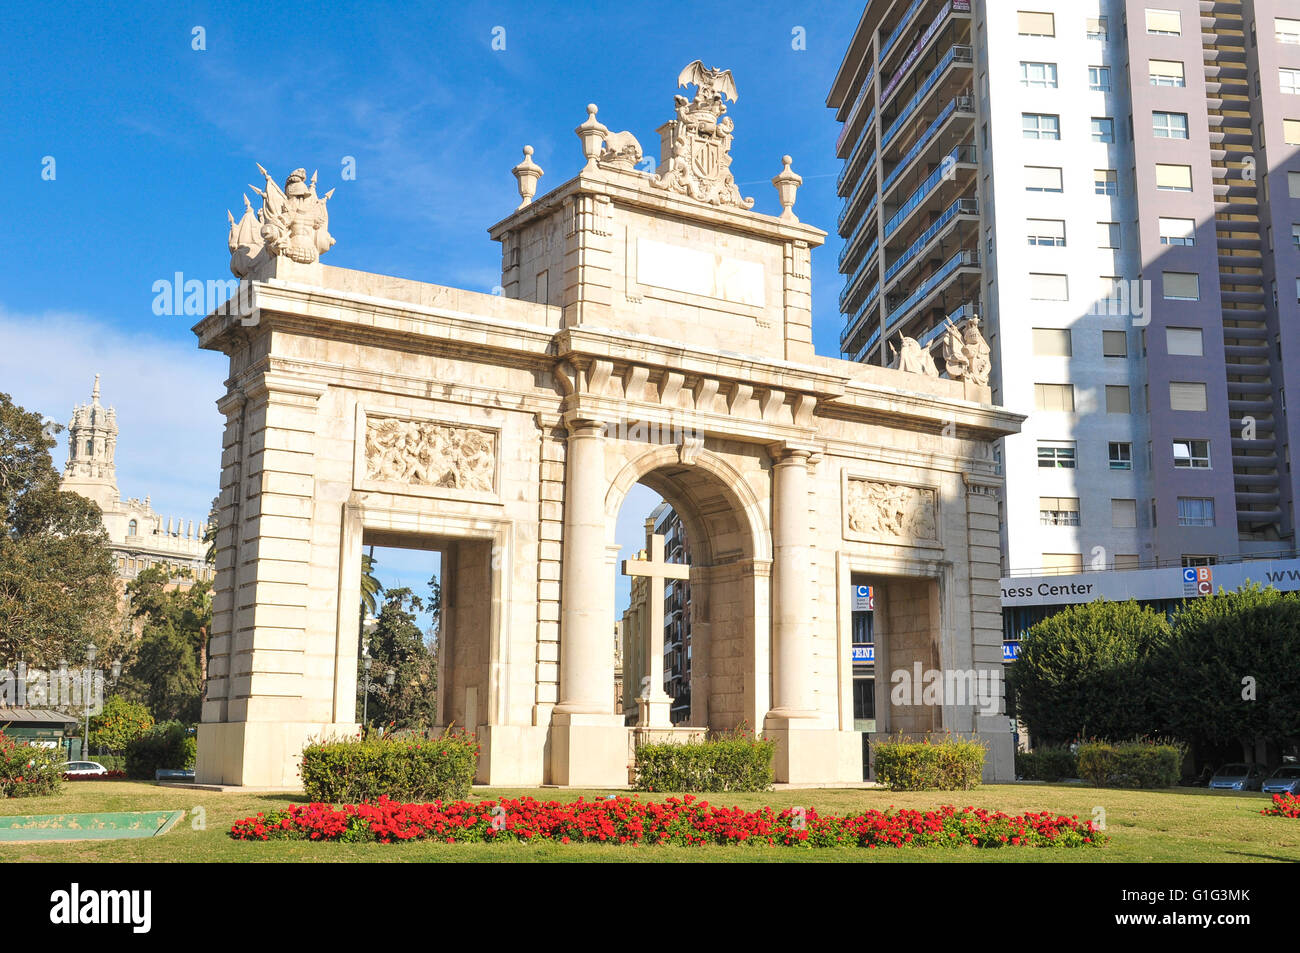 Valencia, Spagna - 30 Marzo 2016: vista dell'arco monumentale nella città vecchia di Valencia, il terzo grande città in Spagna Foto Stock